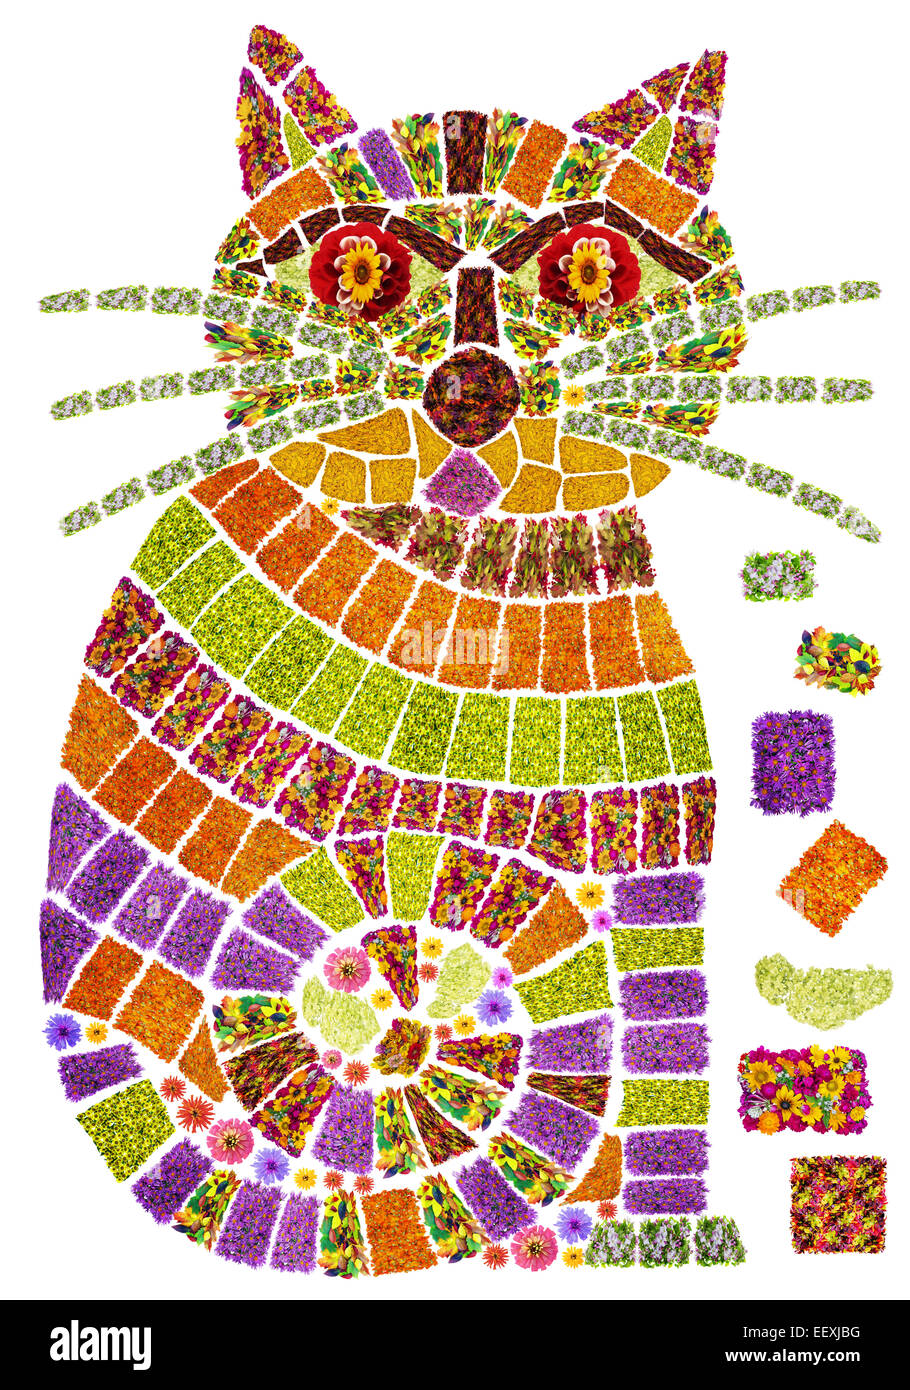 L'image stylisée d'un chat et de l'alimentation du chat en mosaïque style est fait à partir de fleurs d'été. Collage fait main isolé Banque D'Images